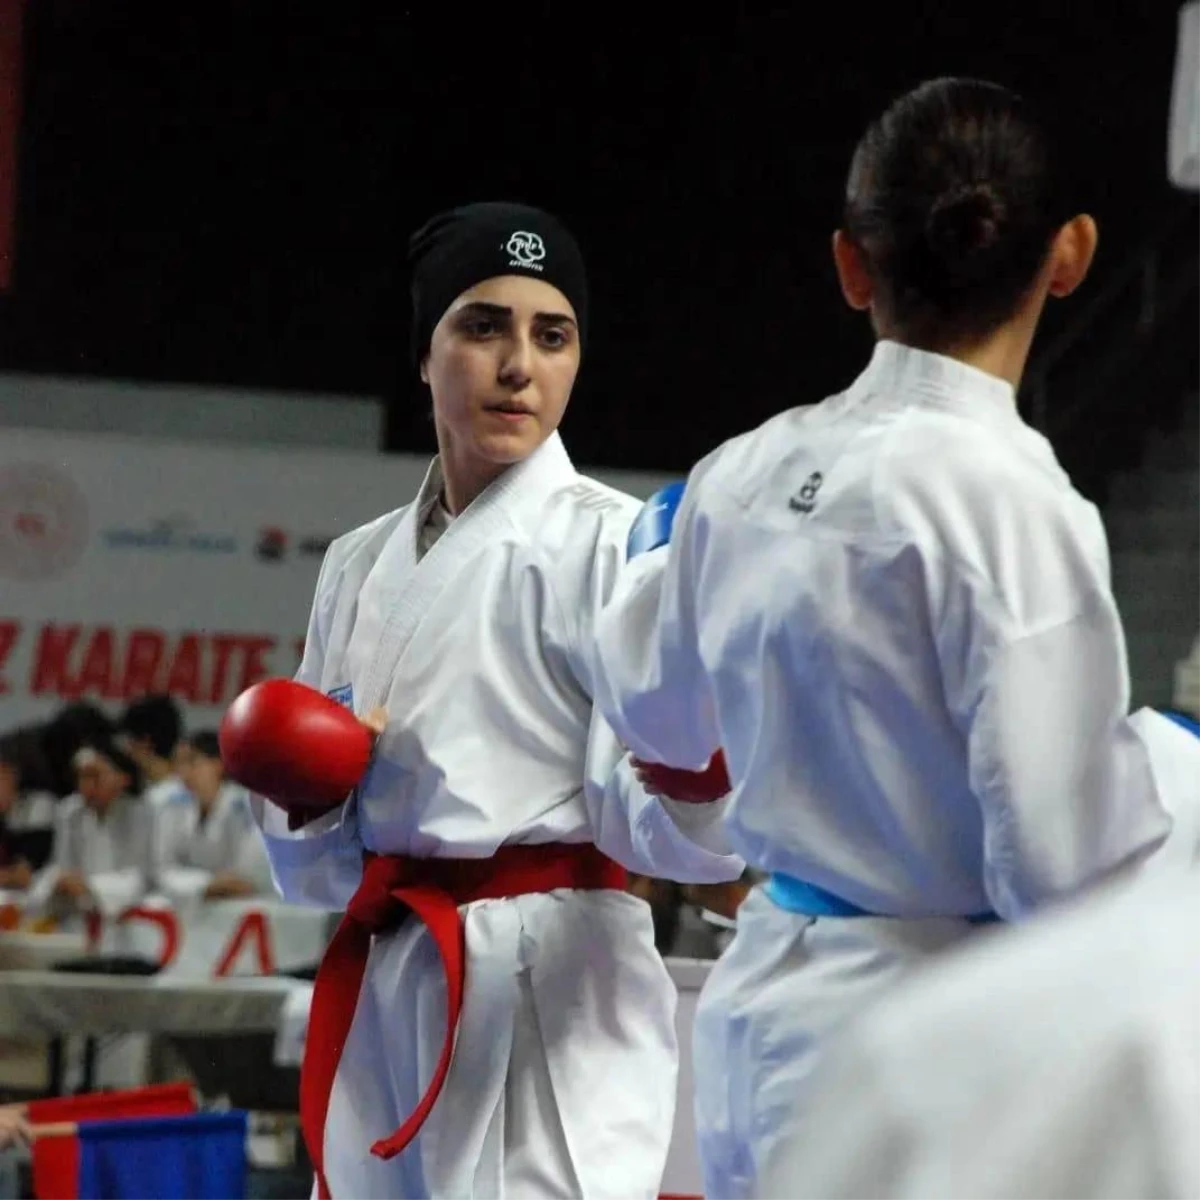 Bayraklı Belediyesi Karate Sporcusu Beyzanur Akgülü Dünya Şampiyonasına Katılacak